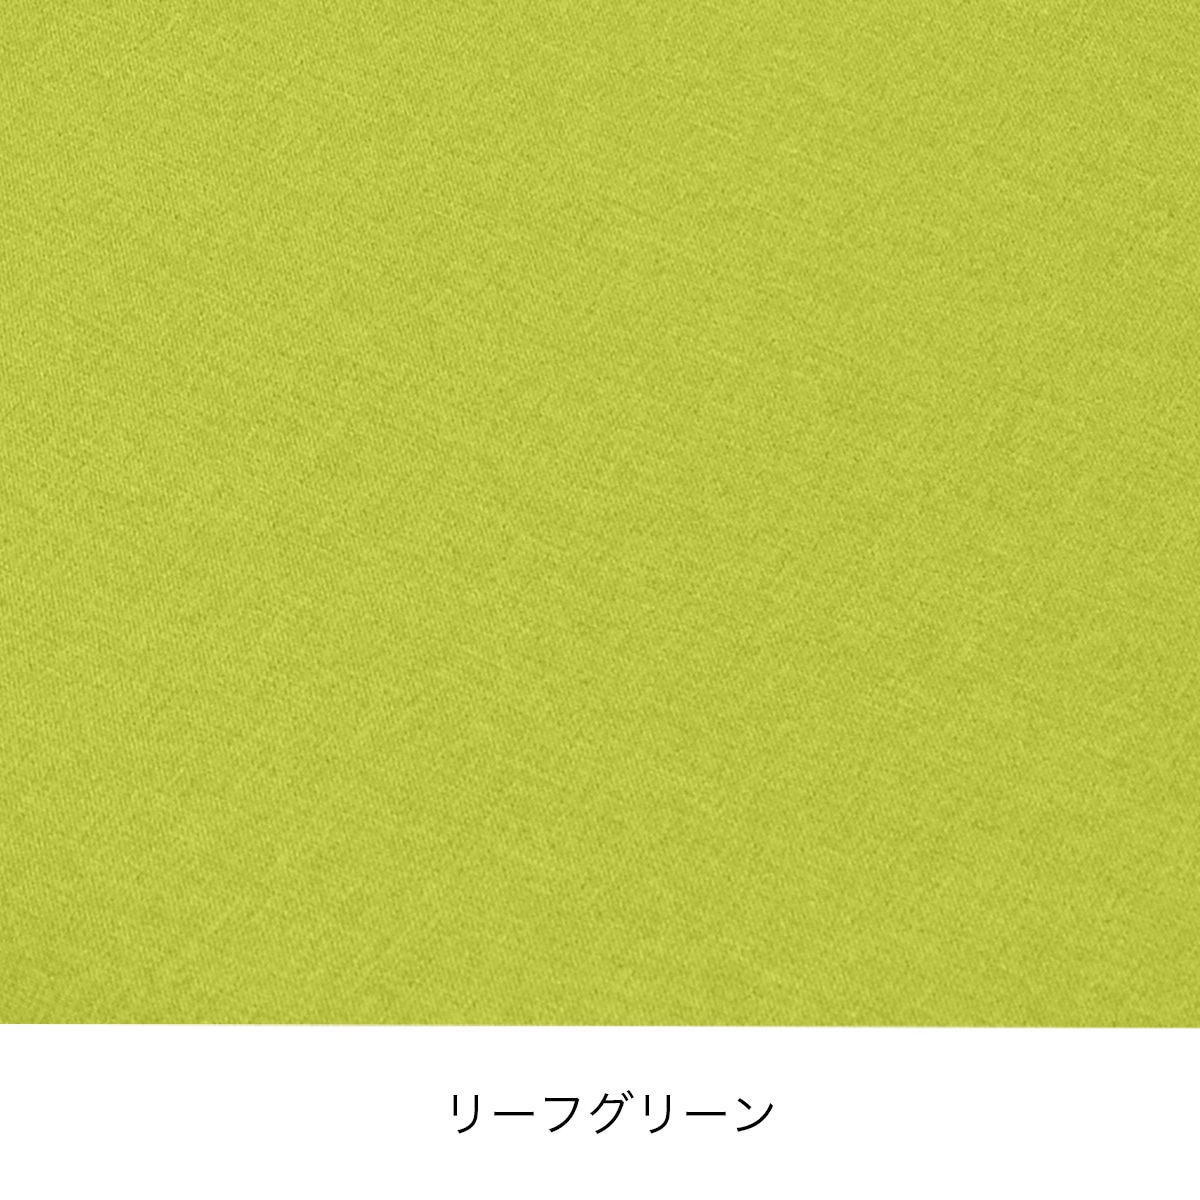 床プニフィット専用カバー(春夏用)